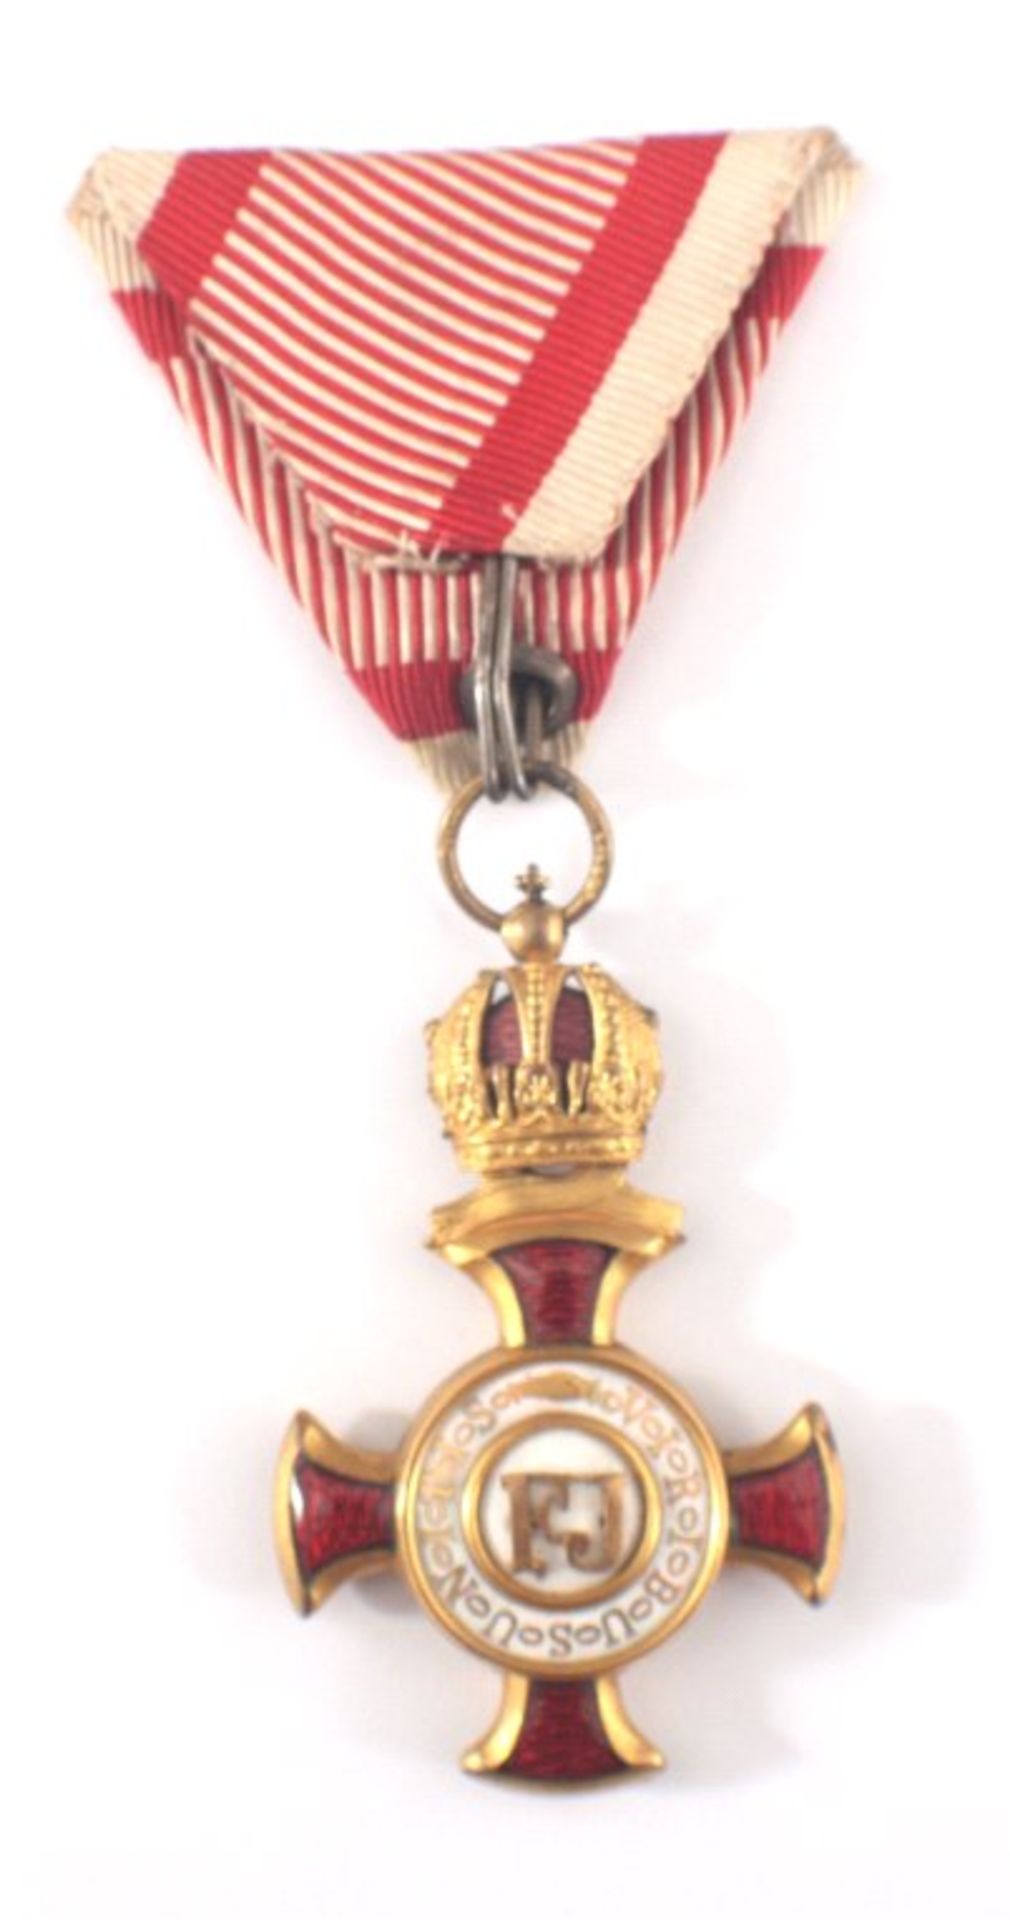 Goldenes Verdienstkreuz mit Krone, WK I, ÖsterreichViribus Unitis, 1916, Orden an ponceaurot- - Image 2 of 2